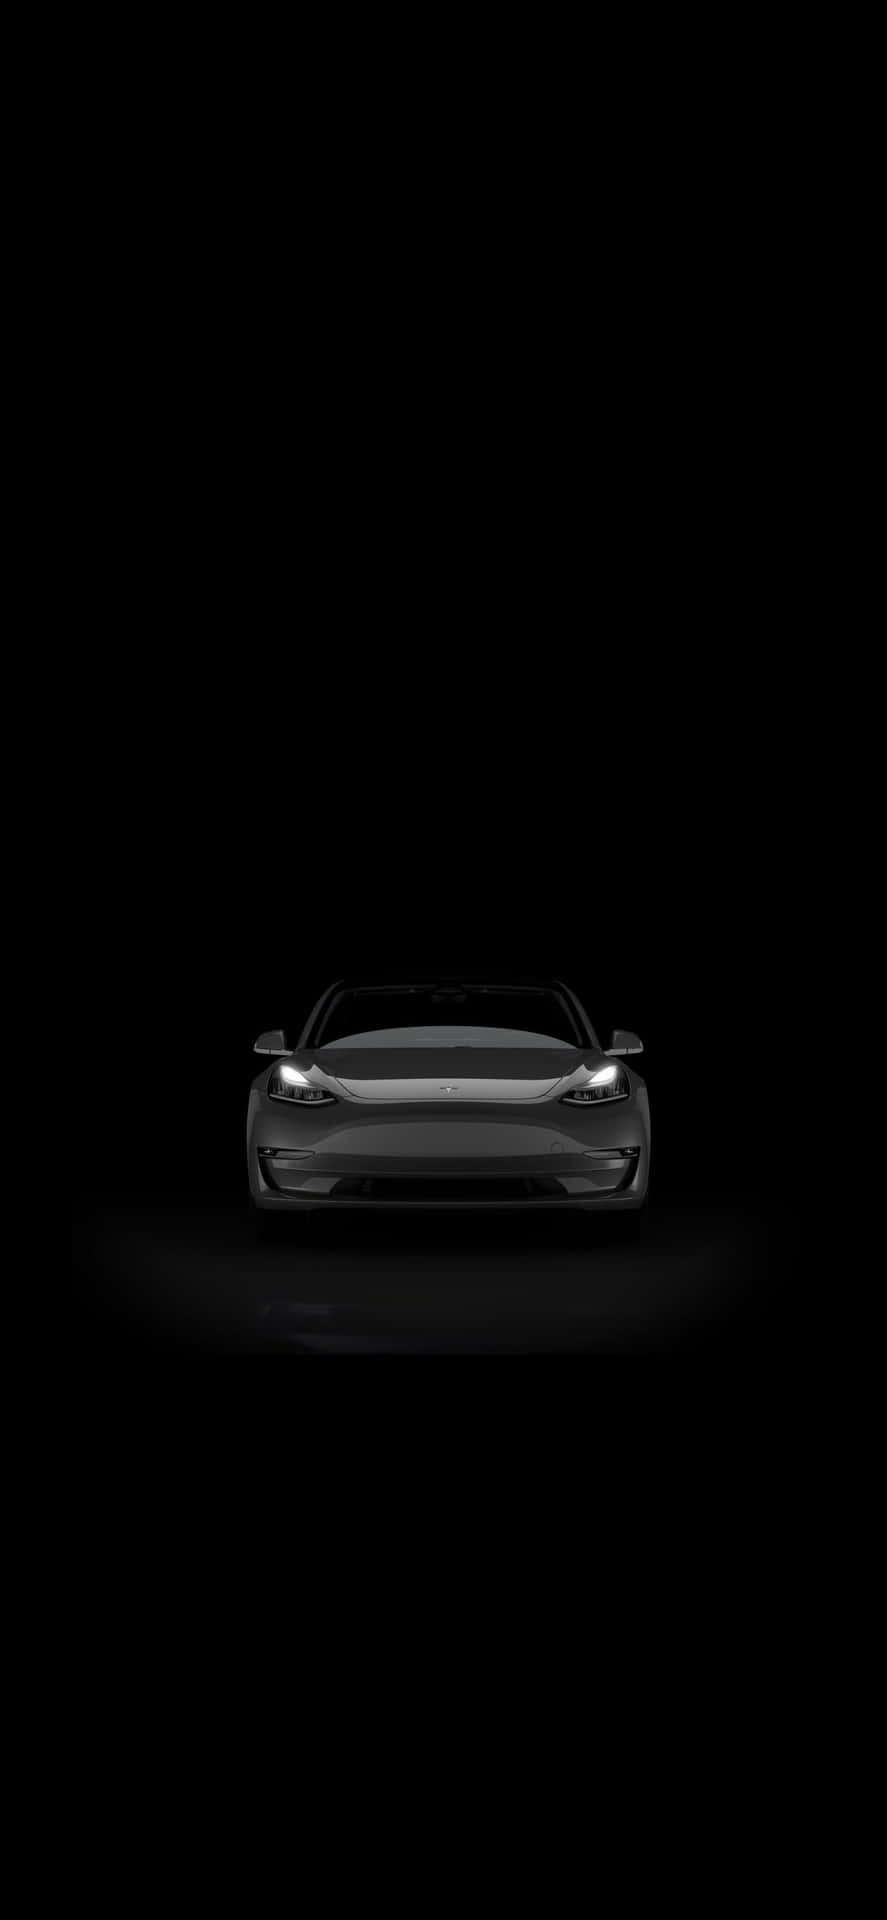 Schaudir Das Schöne Tesla Iphone An. Wallpaper